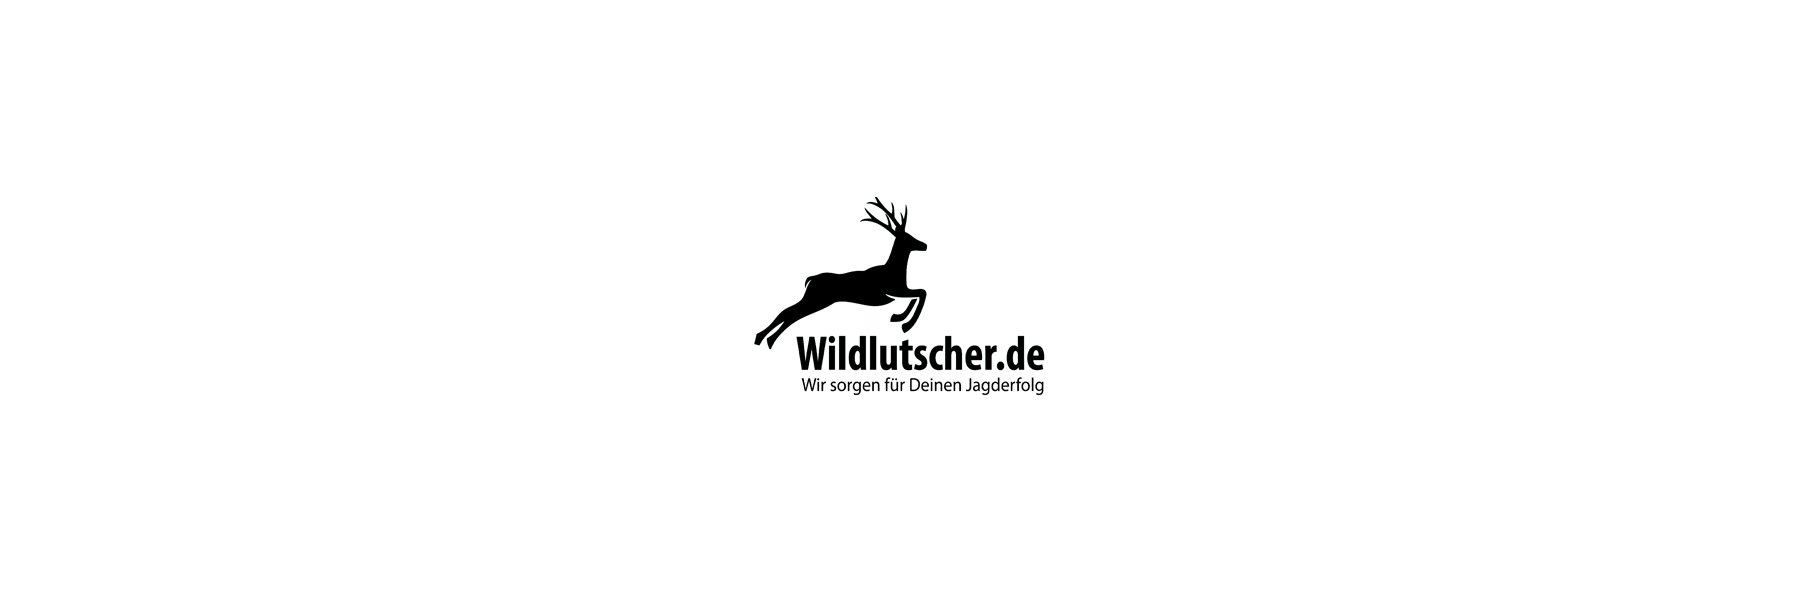     Wildlutscher &ndash; Wir sorgen f&uuml;r...